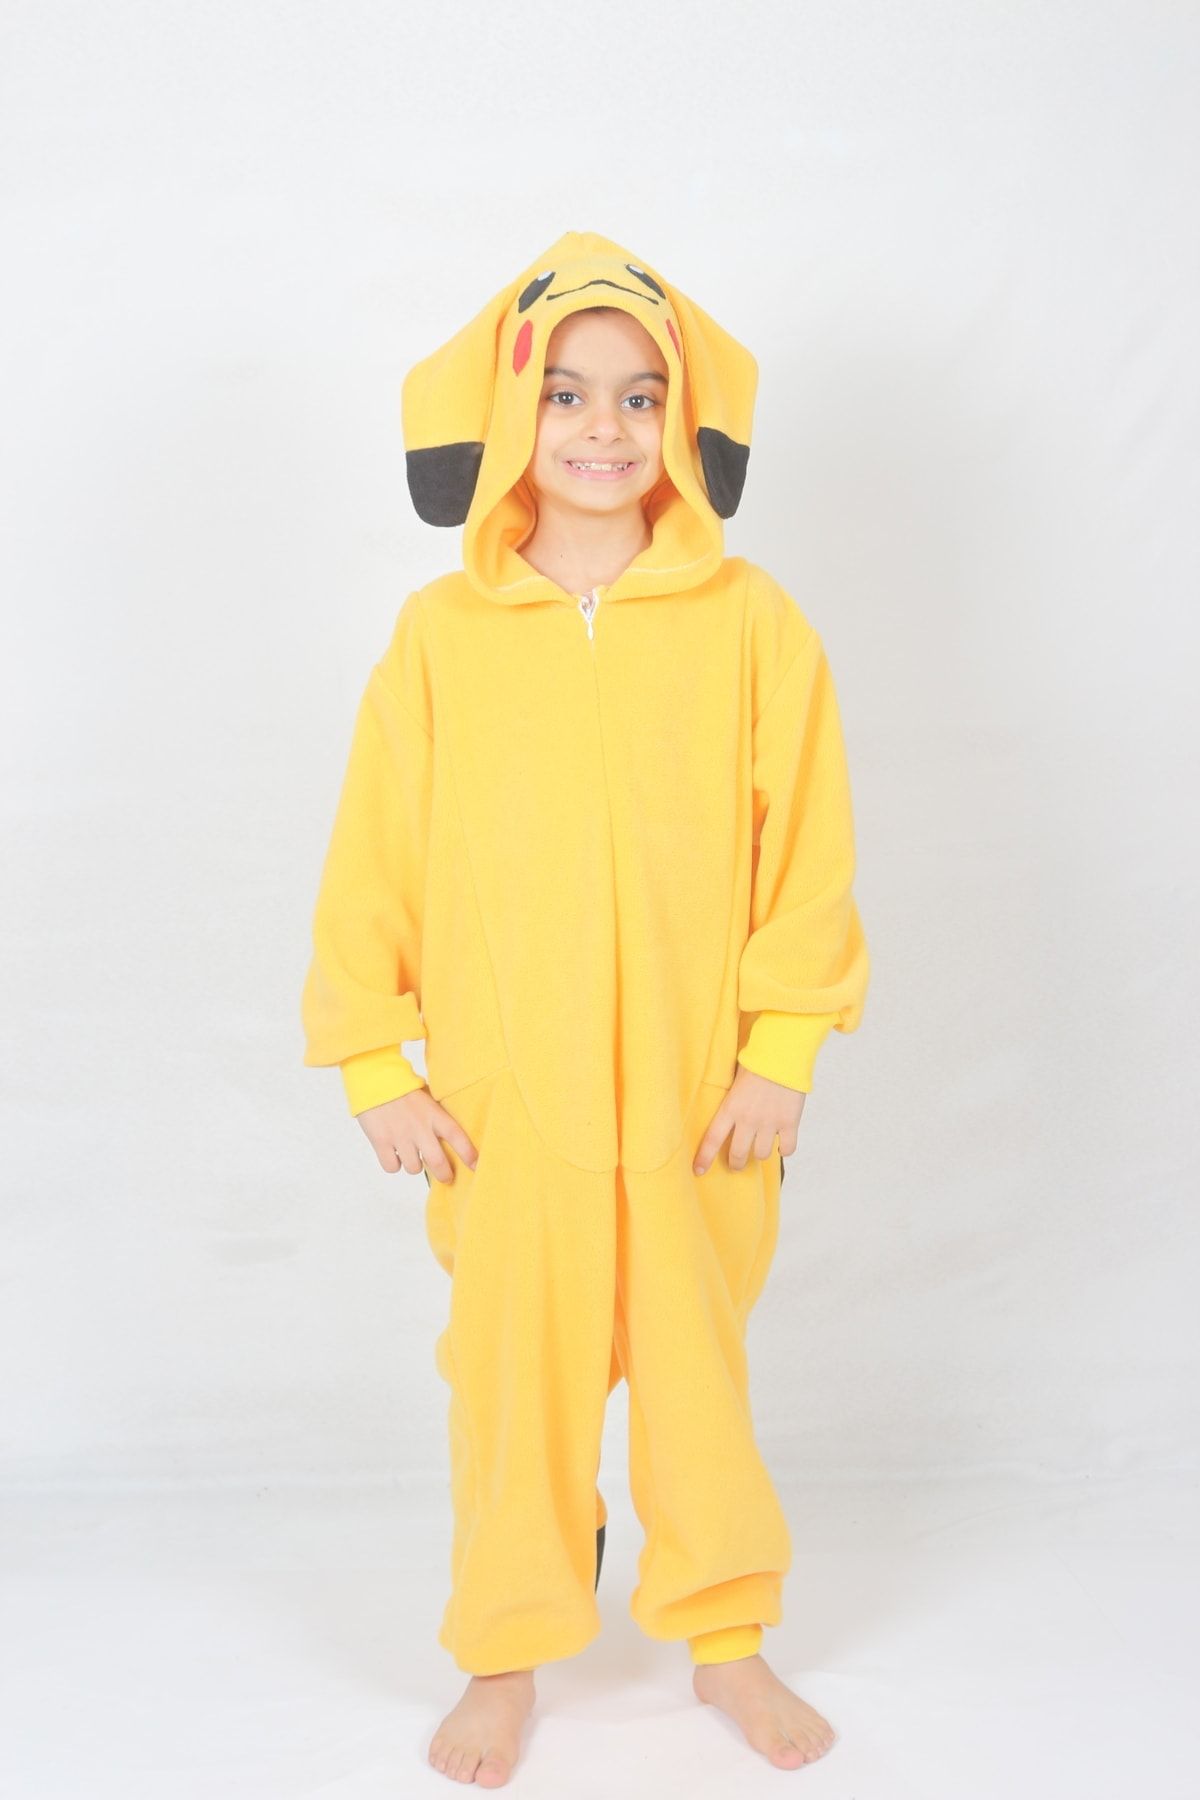 YÜSÜ Çocuk Pikachu Kostümü